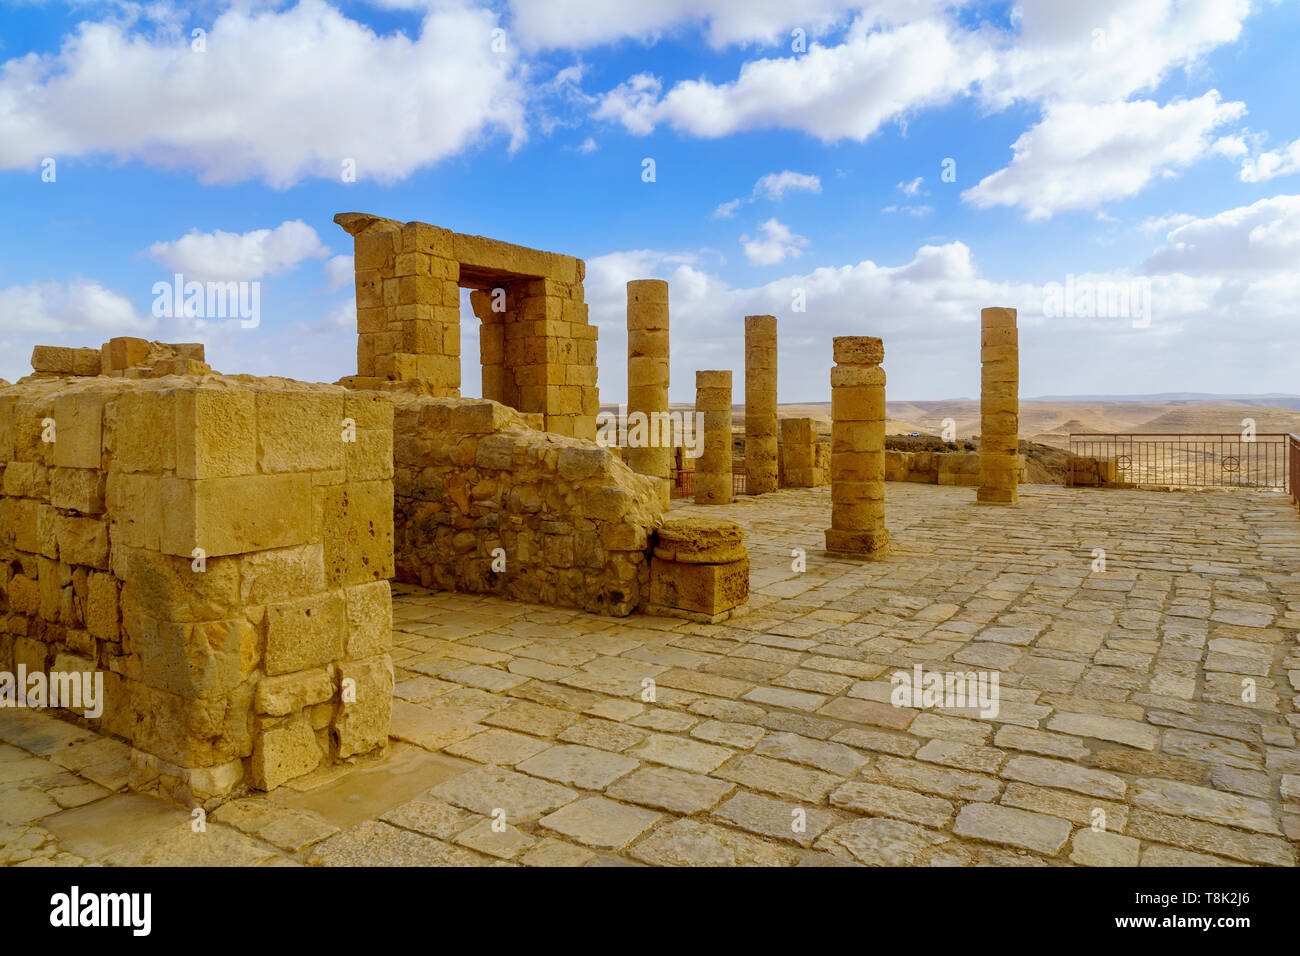 Blick auf die Ruine der alten nabatäische Stadt Avdat, jetzt ein Nationalpark, in der Wüste Negev im Süden Israels Stockfoto